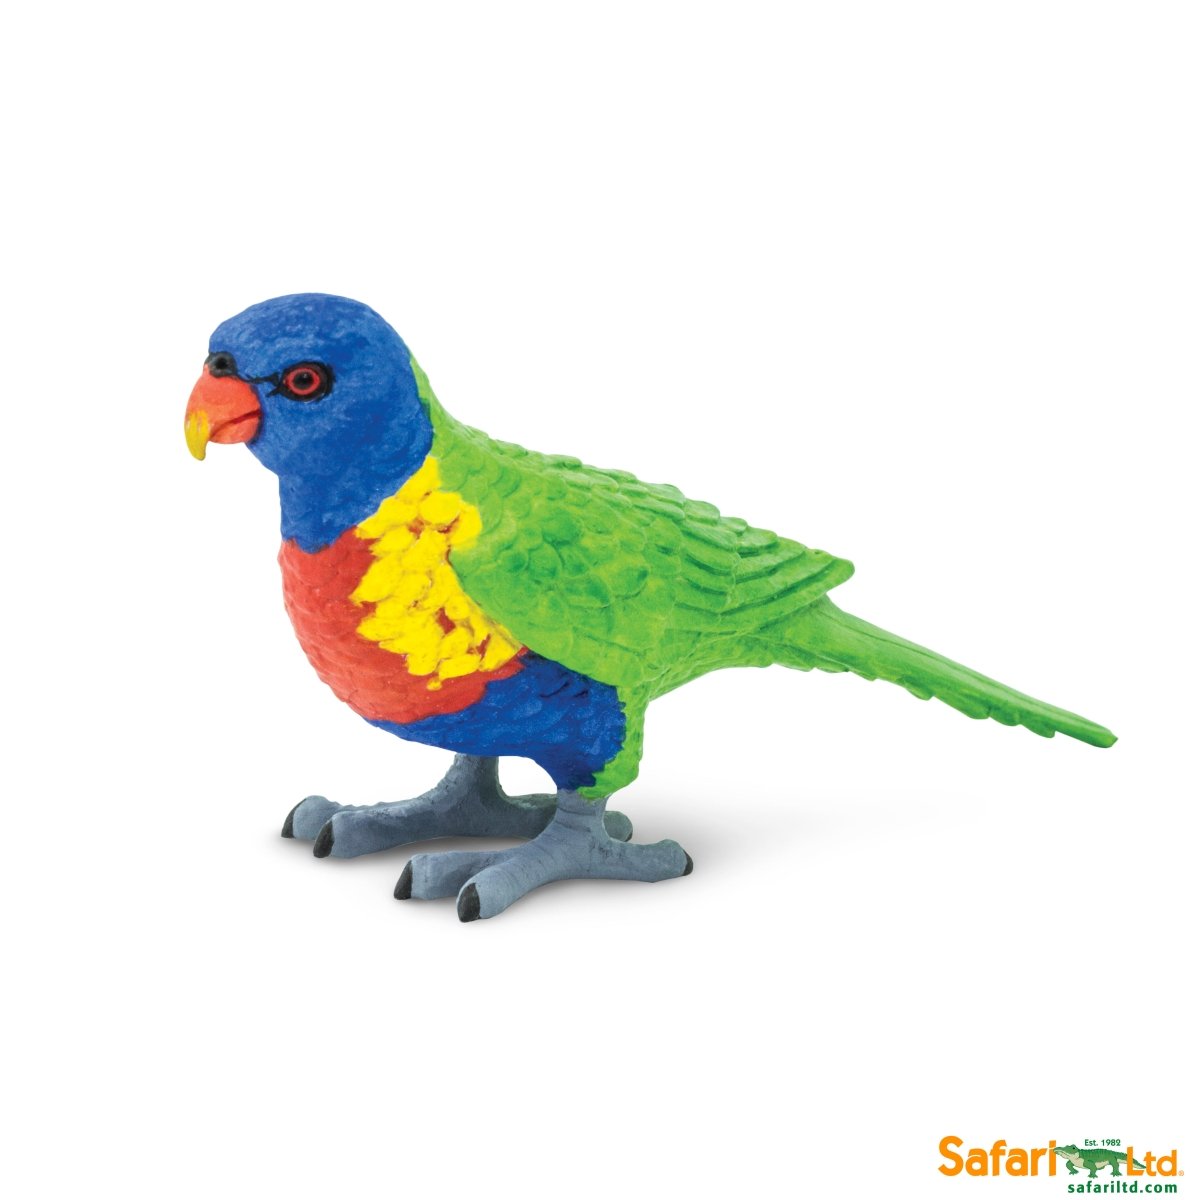 Picture of Safari 150229 Lorikeet Figurine, Multi Color